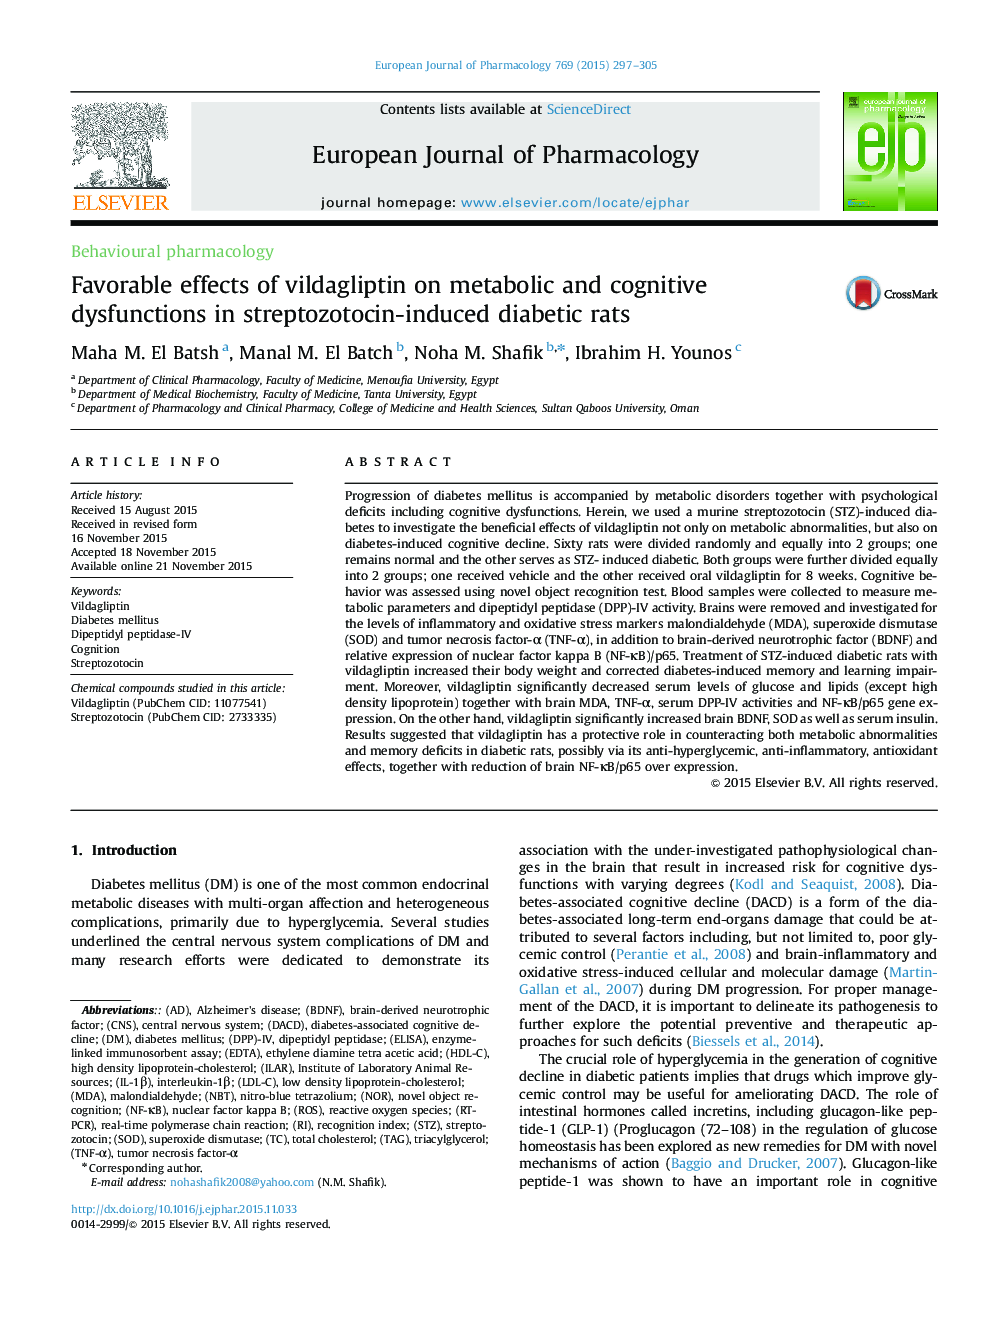 اثرات سودمند ویلداگلیپتین بر اختلالات متابولیکی و شناختی در موش های صحرایی دیابتی ناشی از استرپتوزوتوسین 